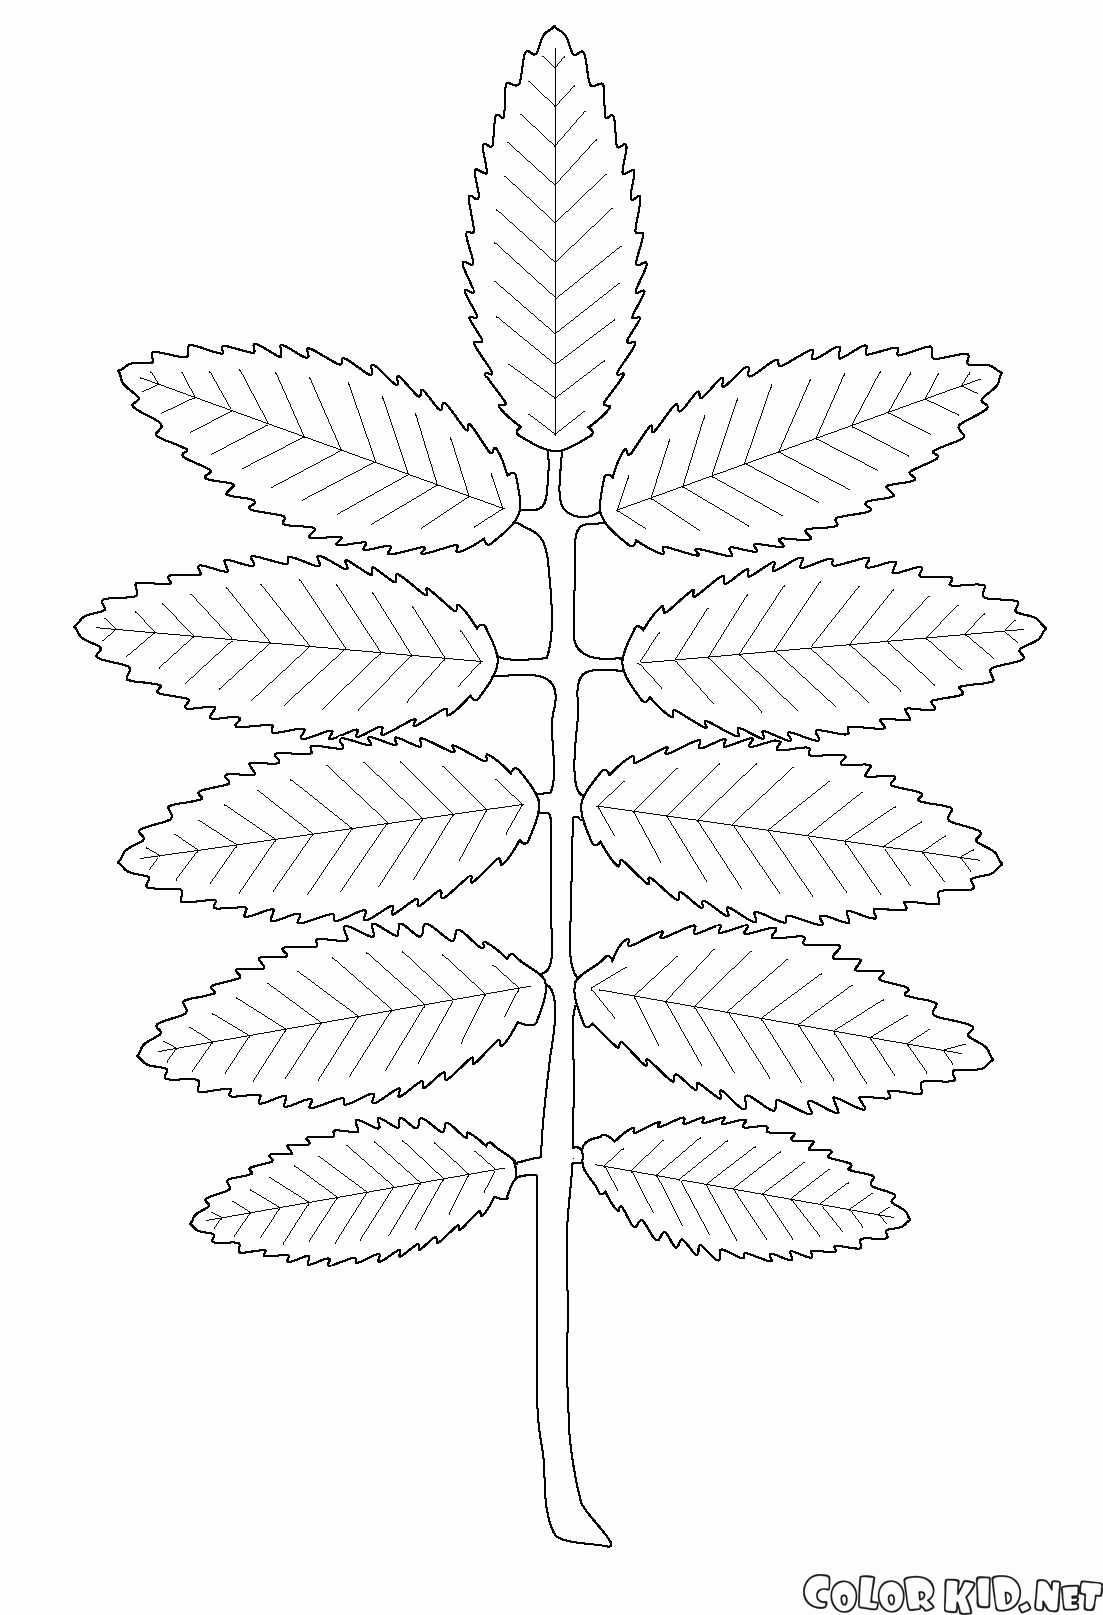 Rowan leaf